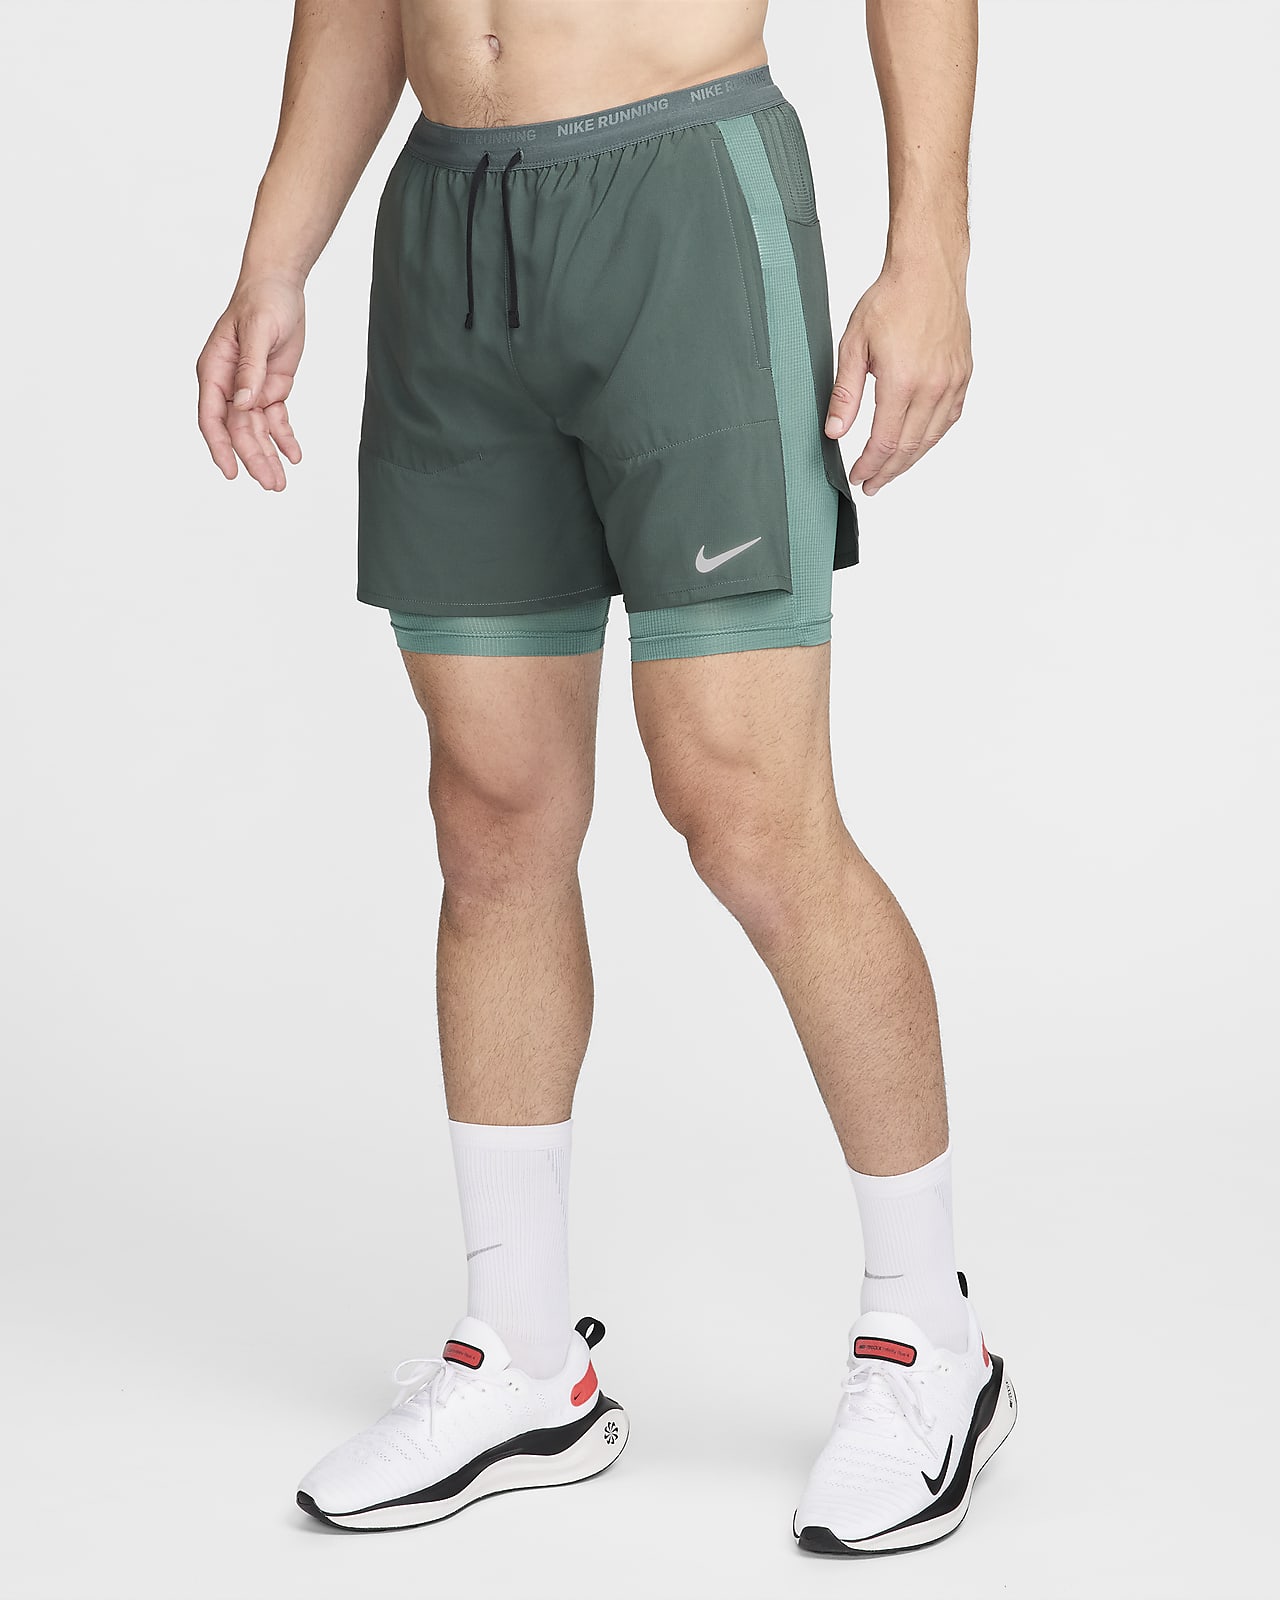 Ανδρικό υβριδικό σορτς για τρέξιμο Dri-FIT Nike Stride 13 cm